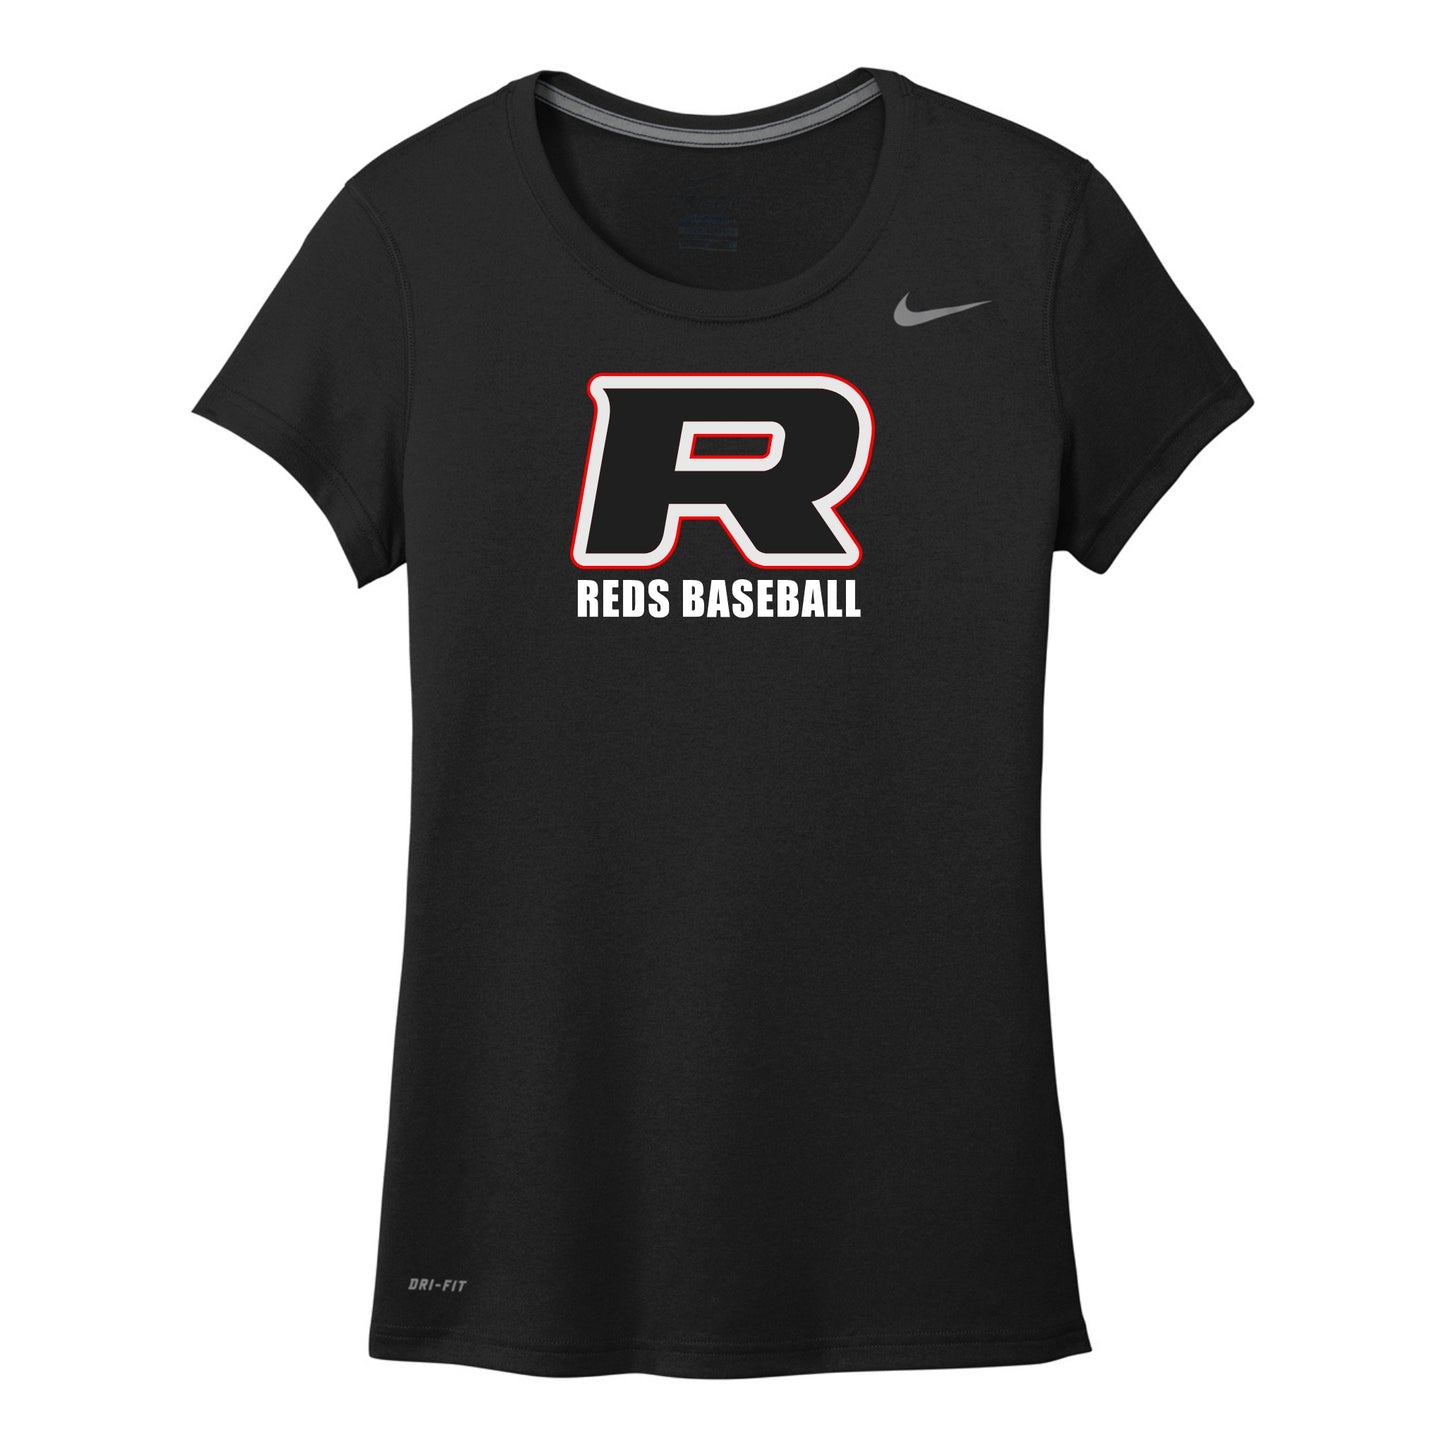 Blackout "R" Nike Women's Legend Tee